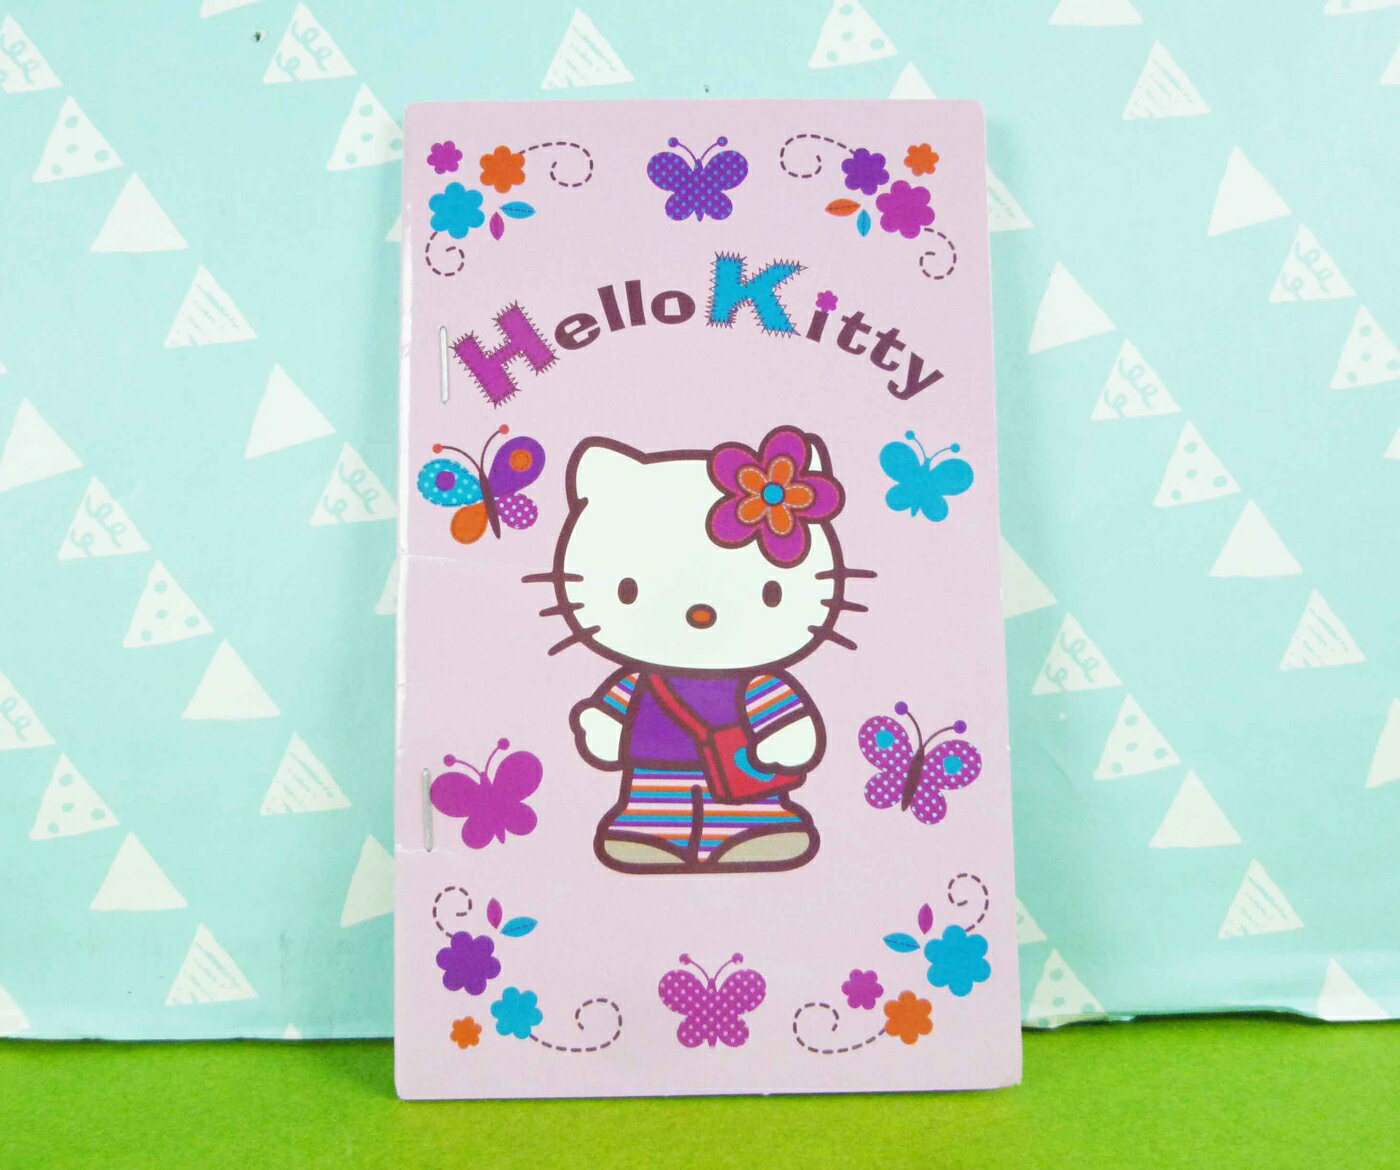 【震撼精品百貨】Hello Kitty 凱蒂貓 貼紙本 紫蝴蝶【共1款】*36948 震撼日式精品百貨